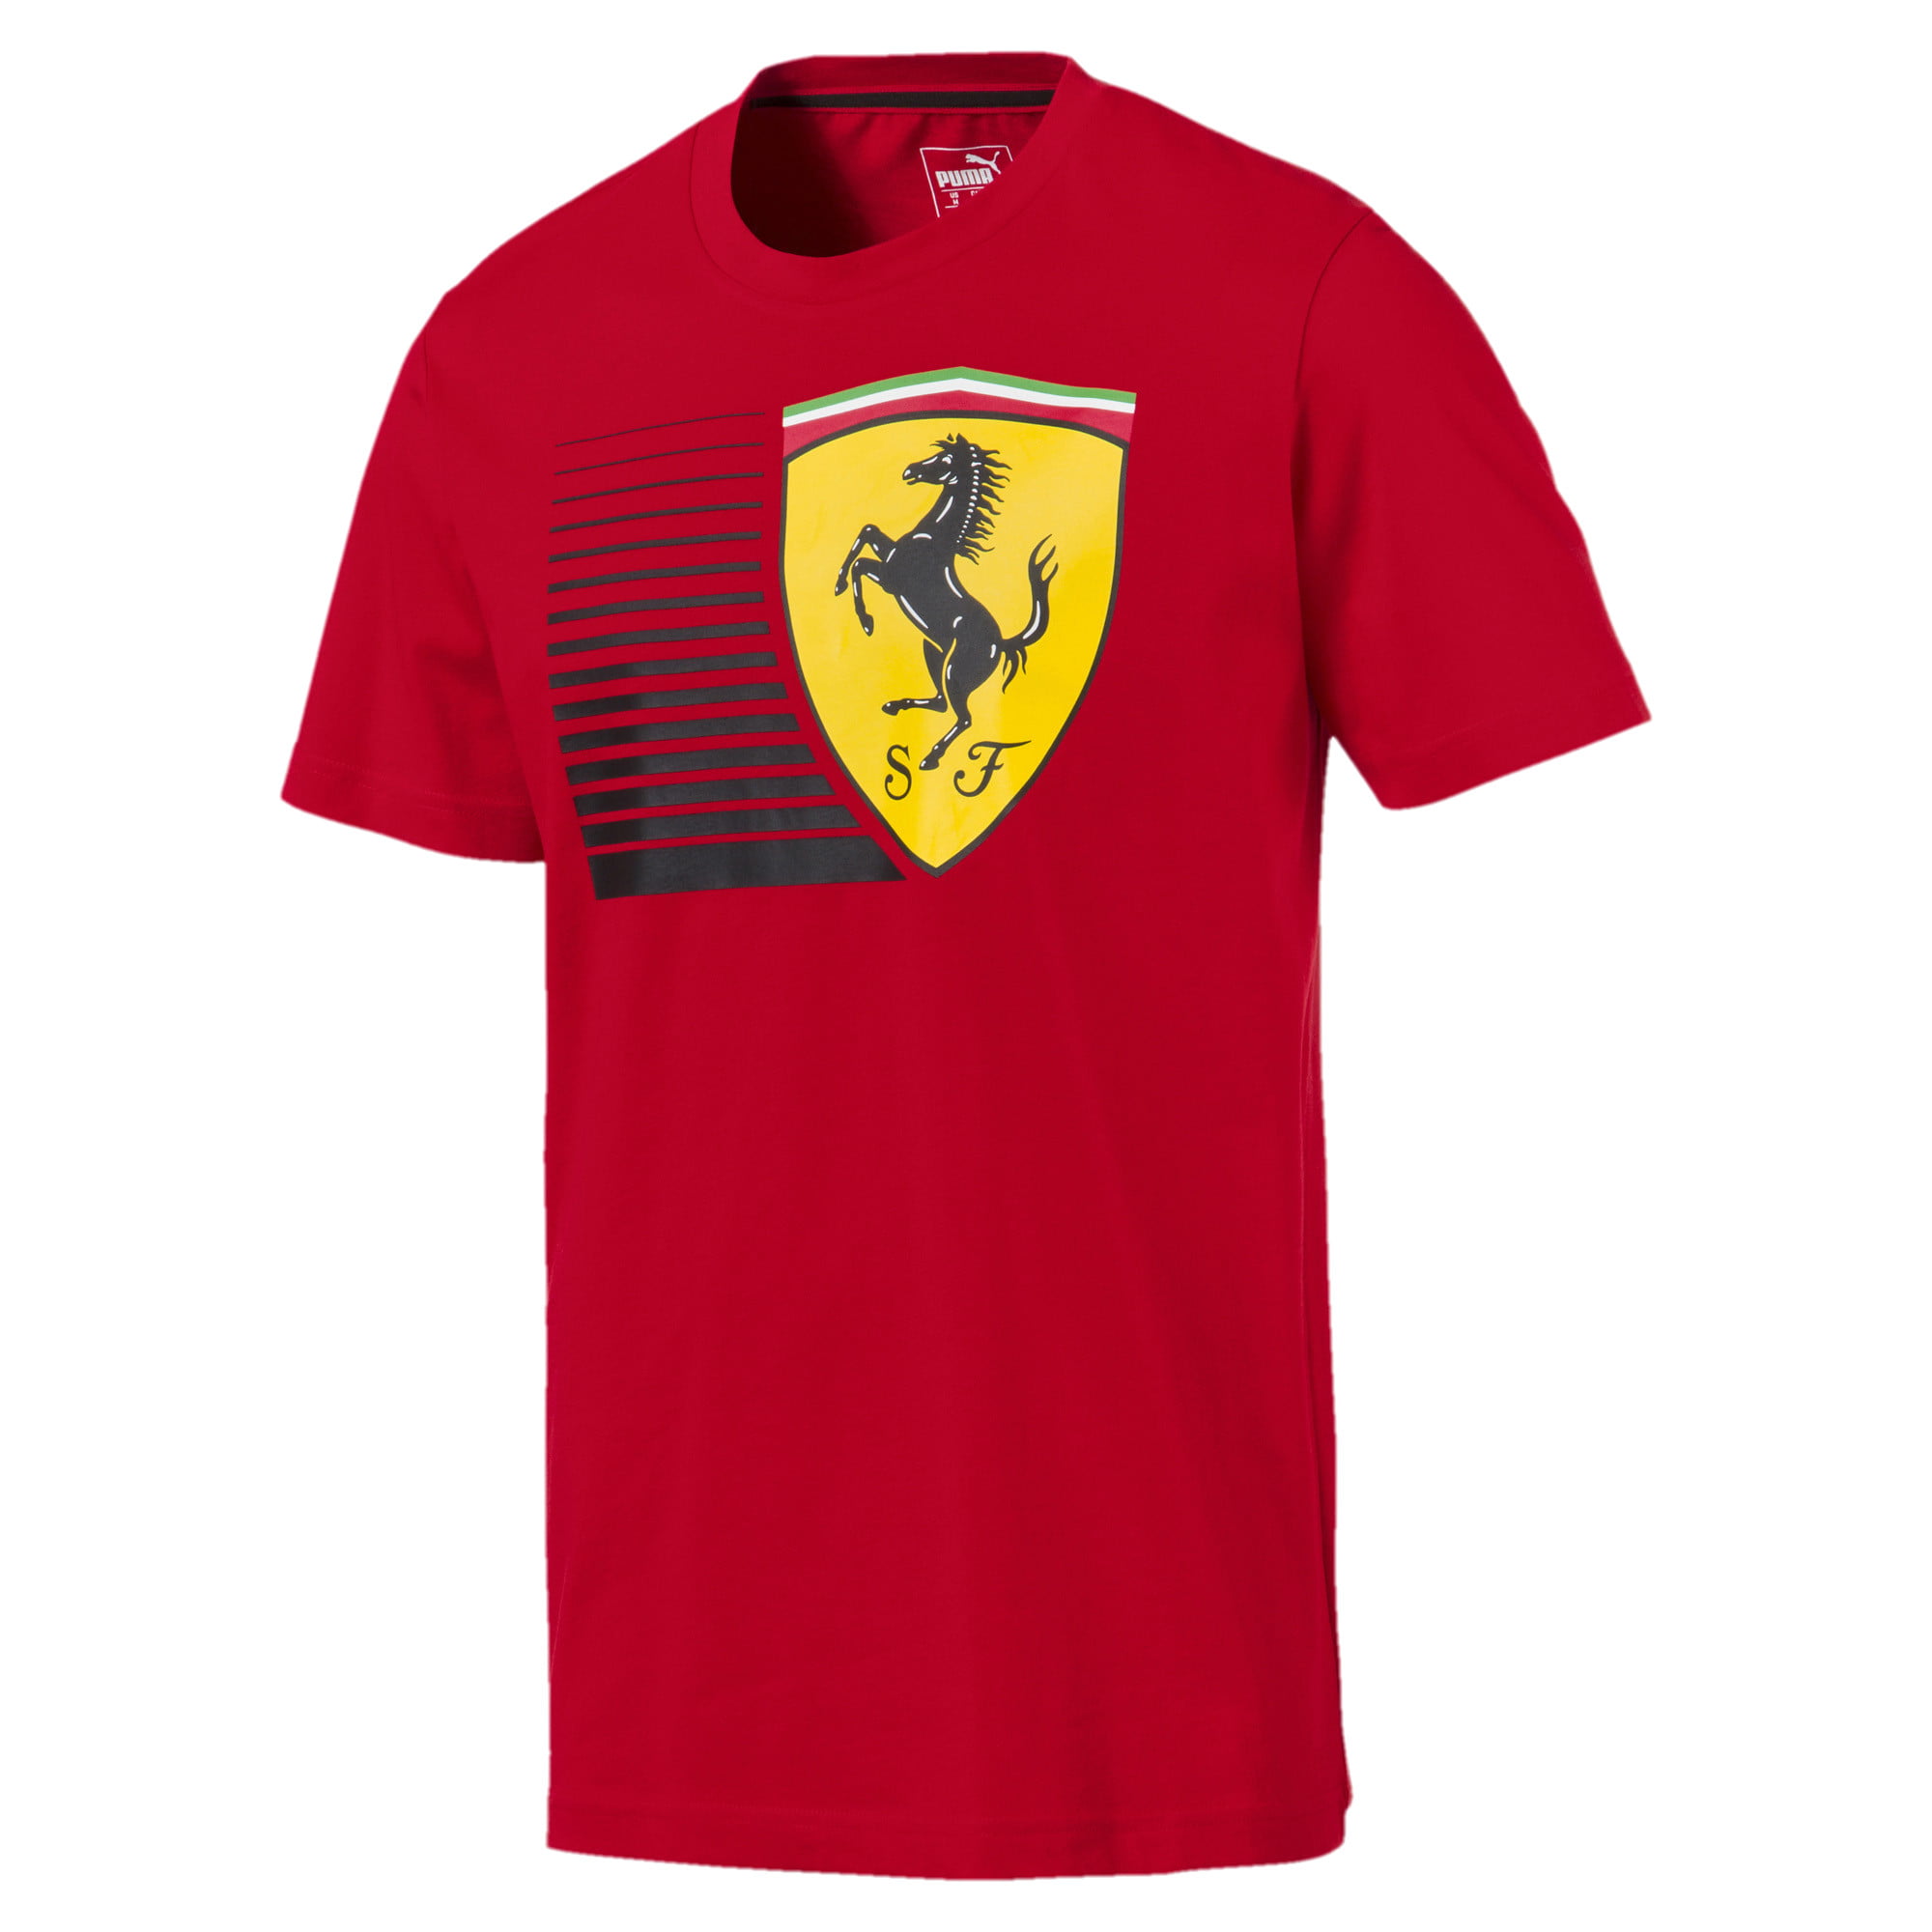 PUMA Men's Scuderia Ferrari Big Shield T-Shirt, Red - Walmart.com